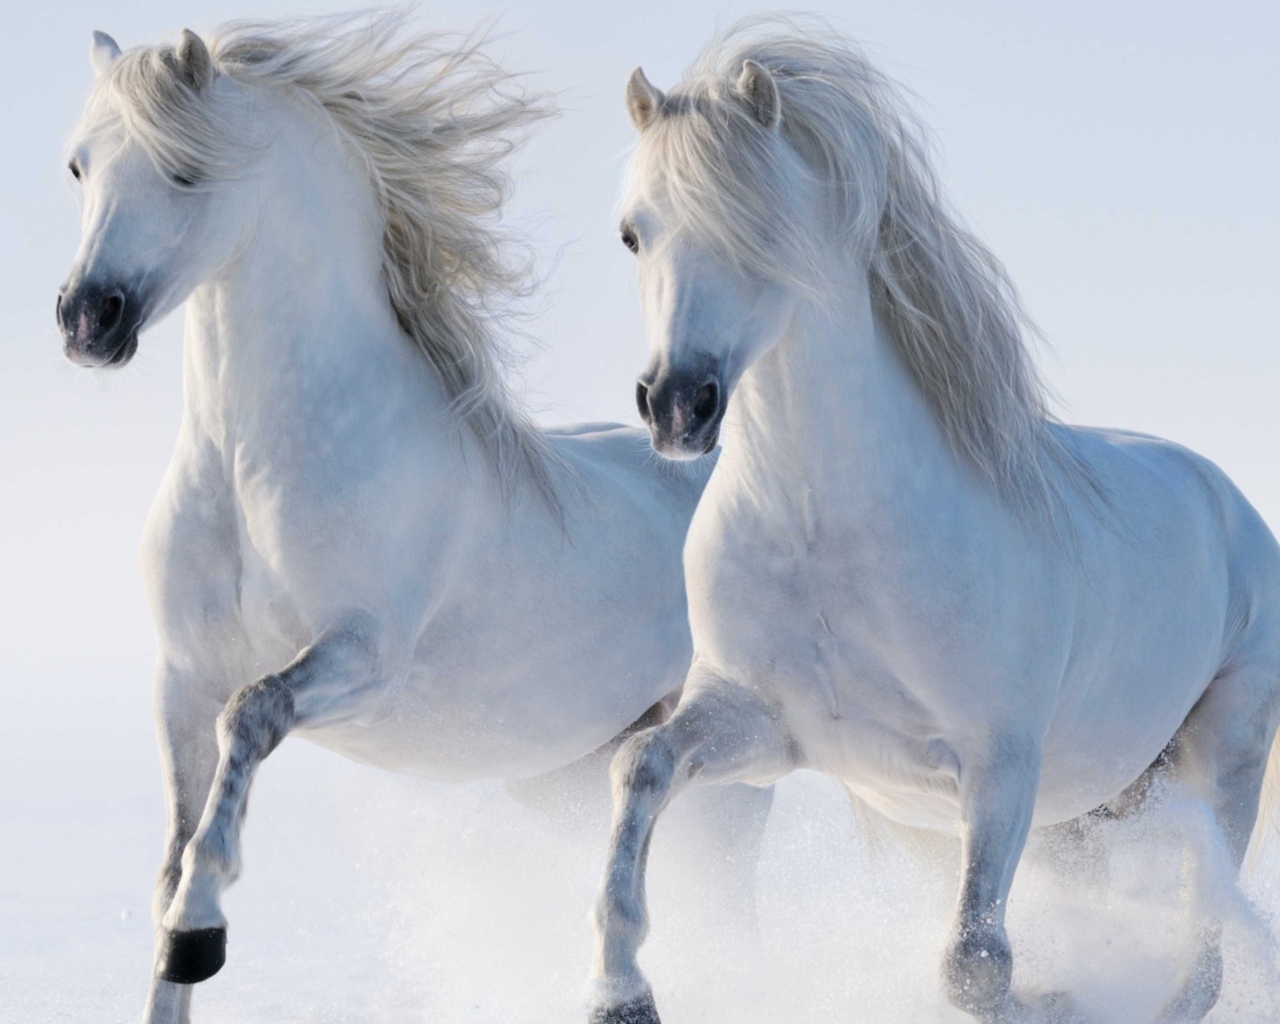 Two beautiful white horses run through the snow